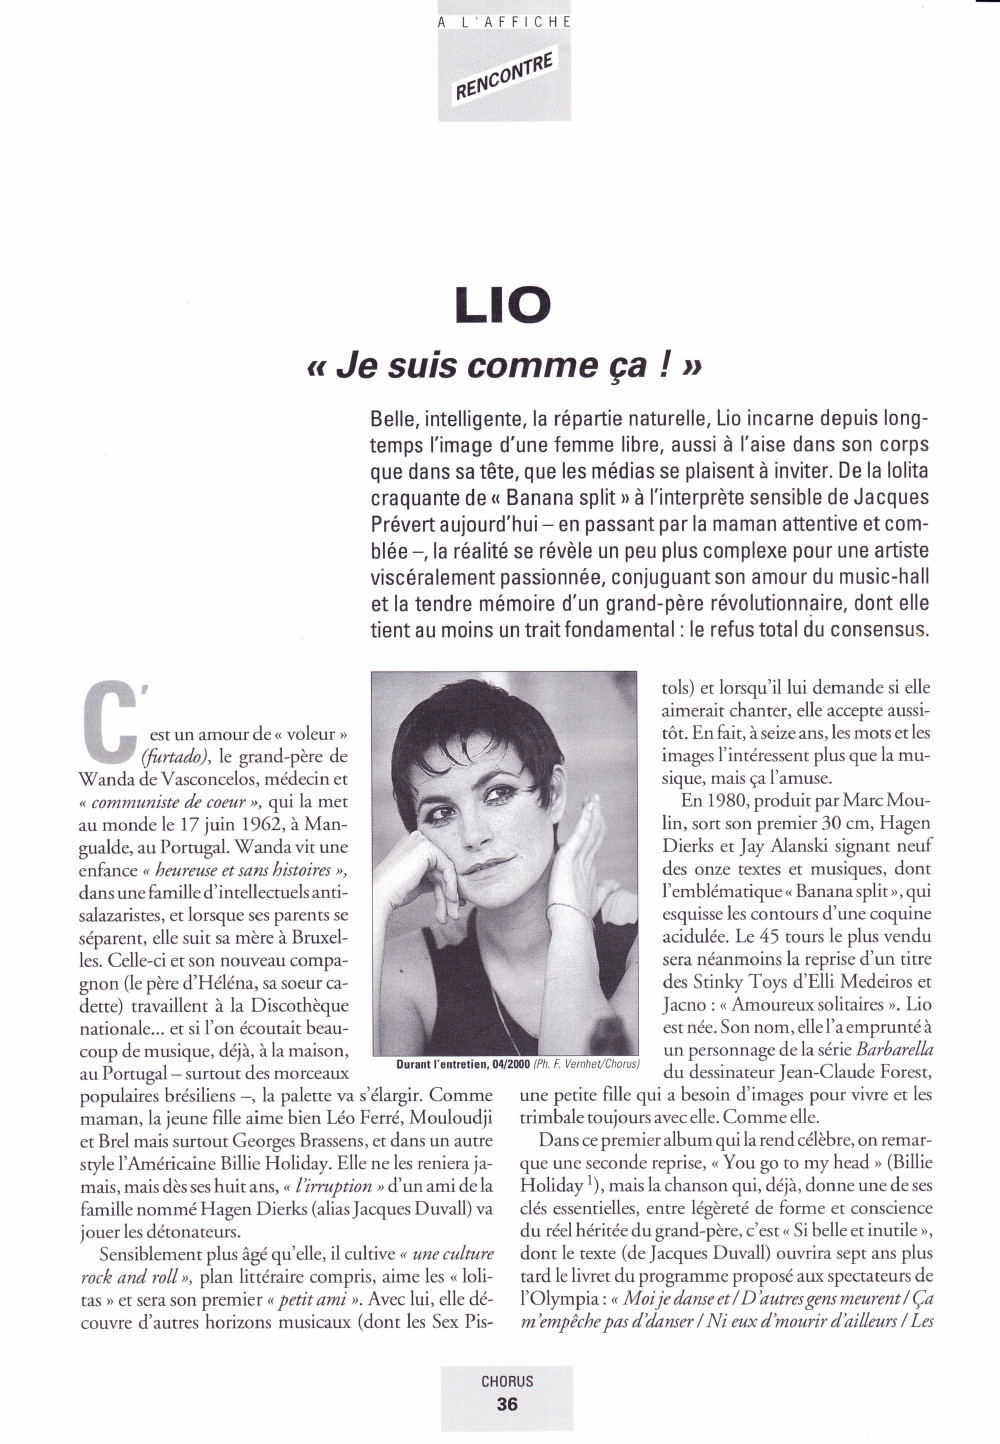 Portrait/interview de LIO par DANIEL PANTCHENKO dans "CHORUS" (été 2000) 13111012214516724011718821